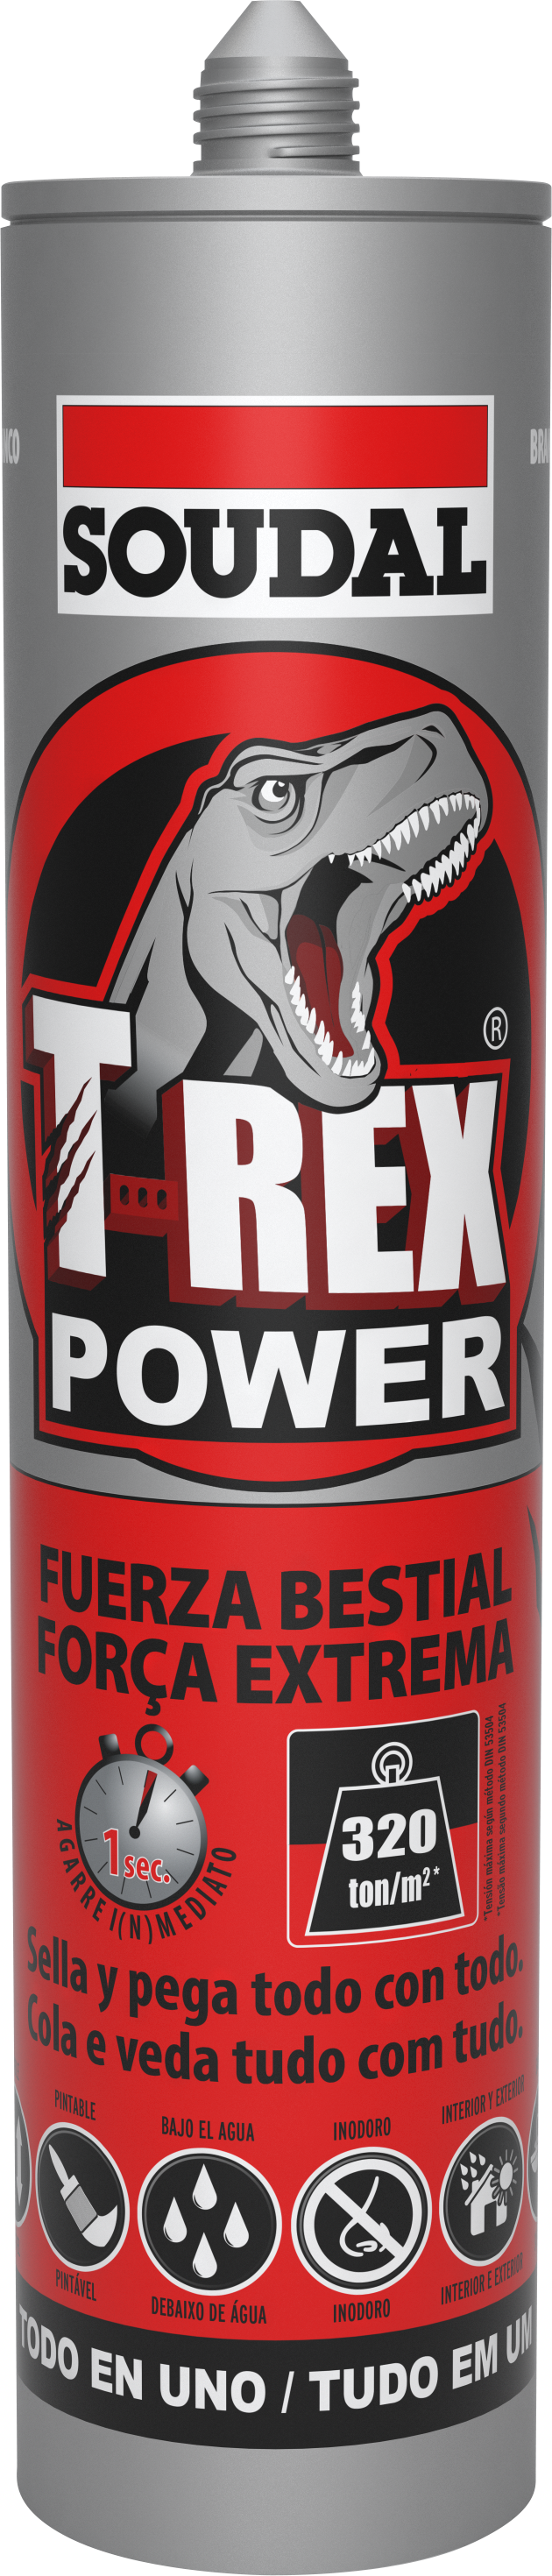 T-Rex Power